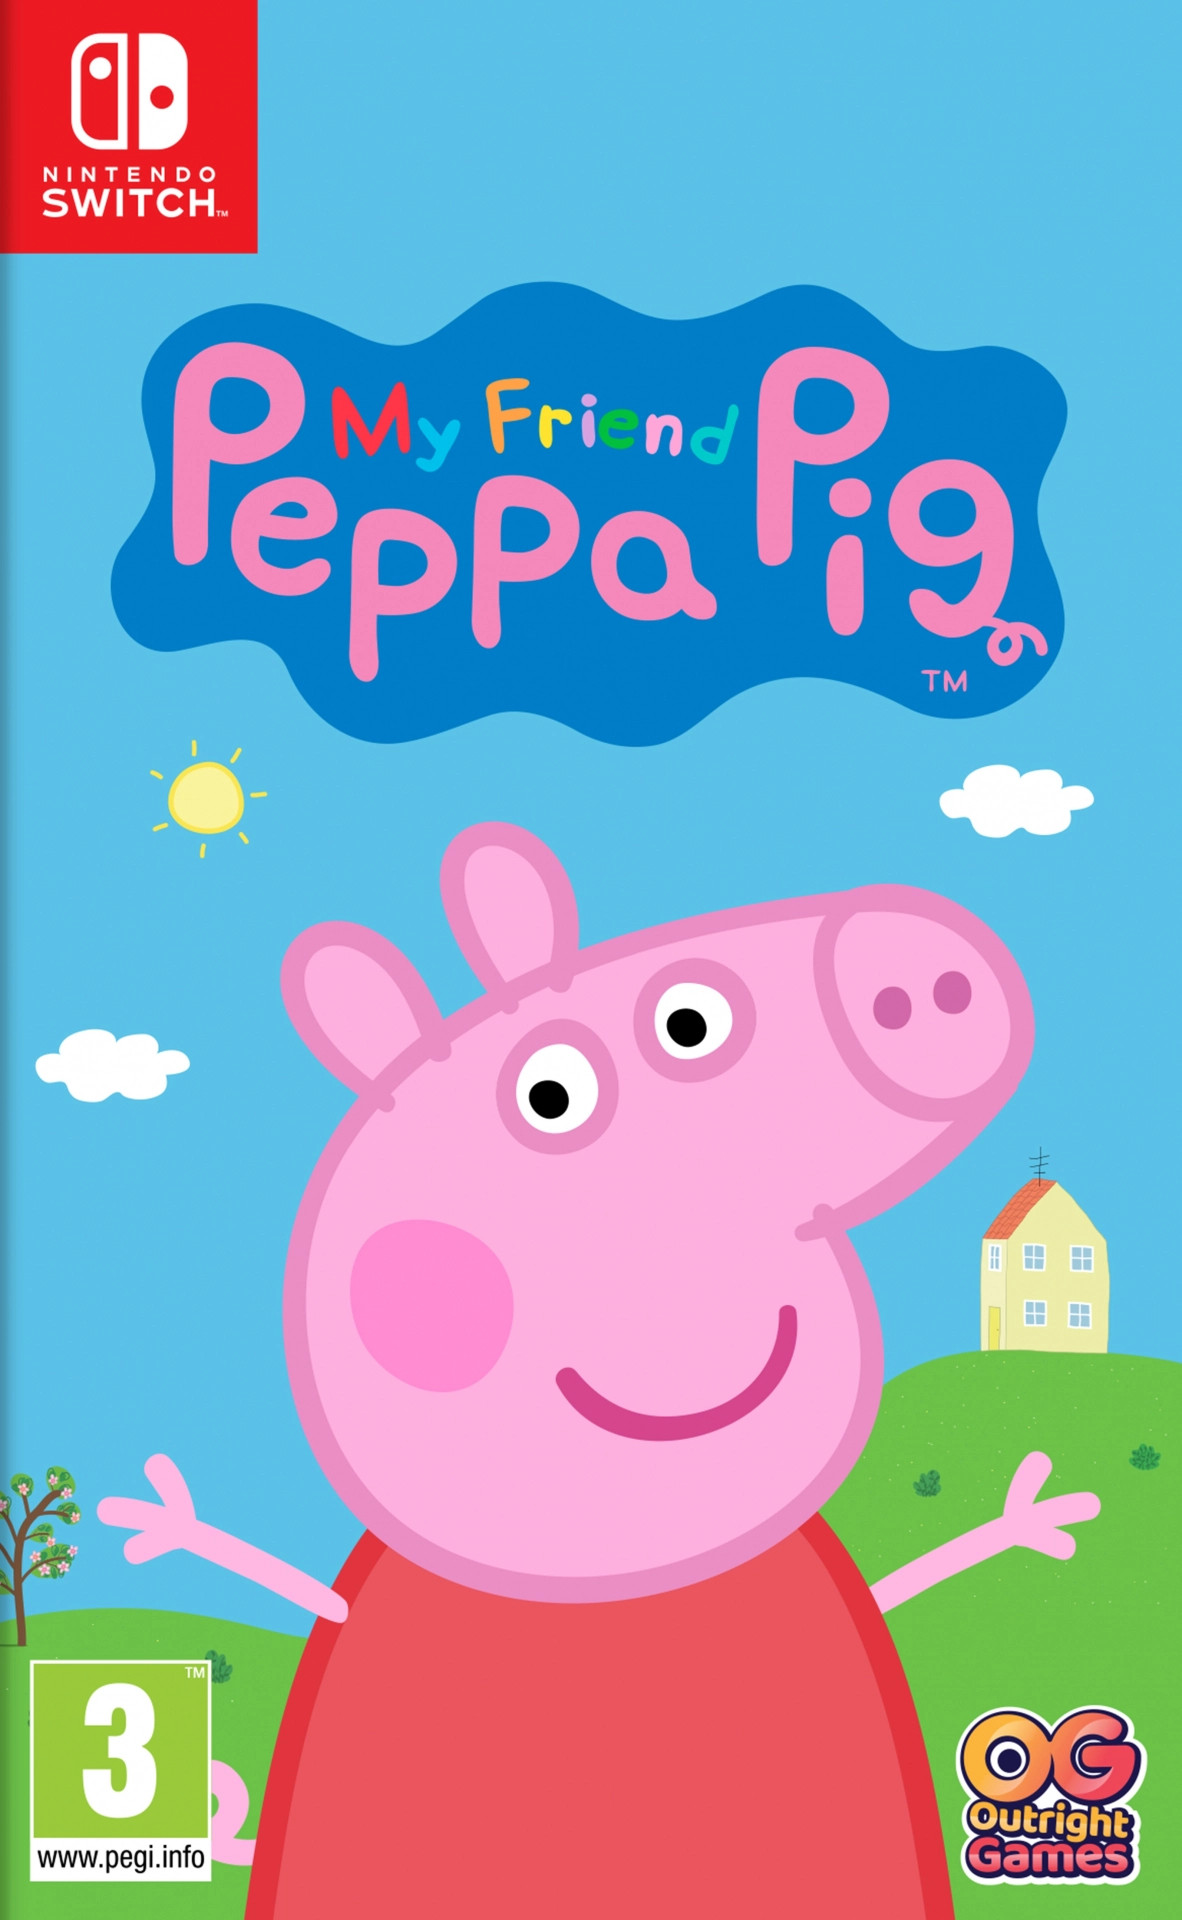 Mijn Vriendin Peppa Pig